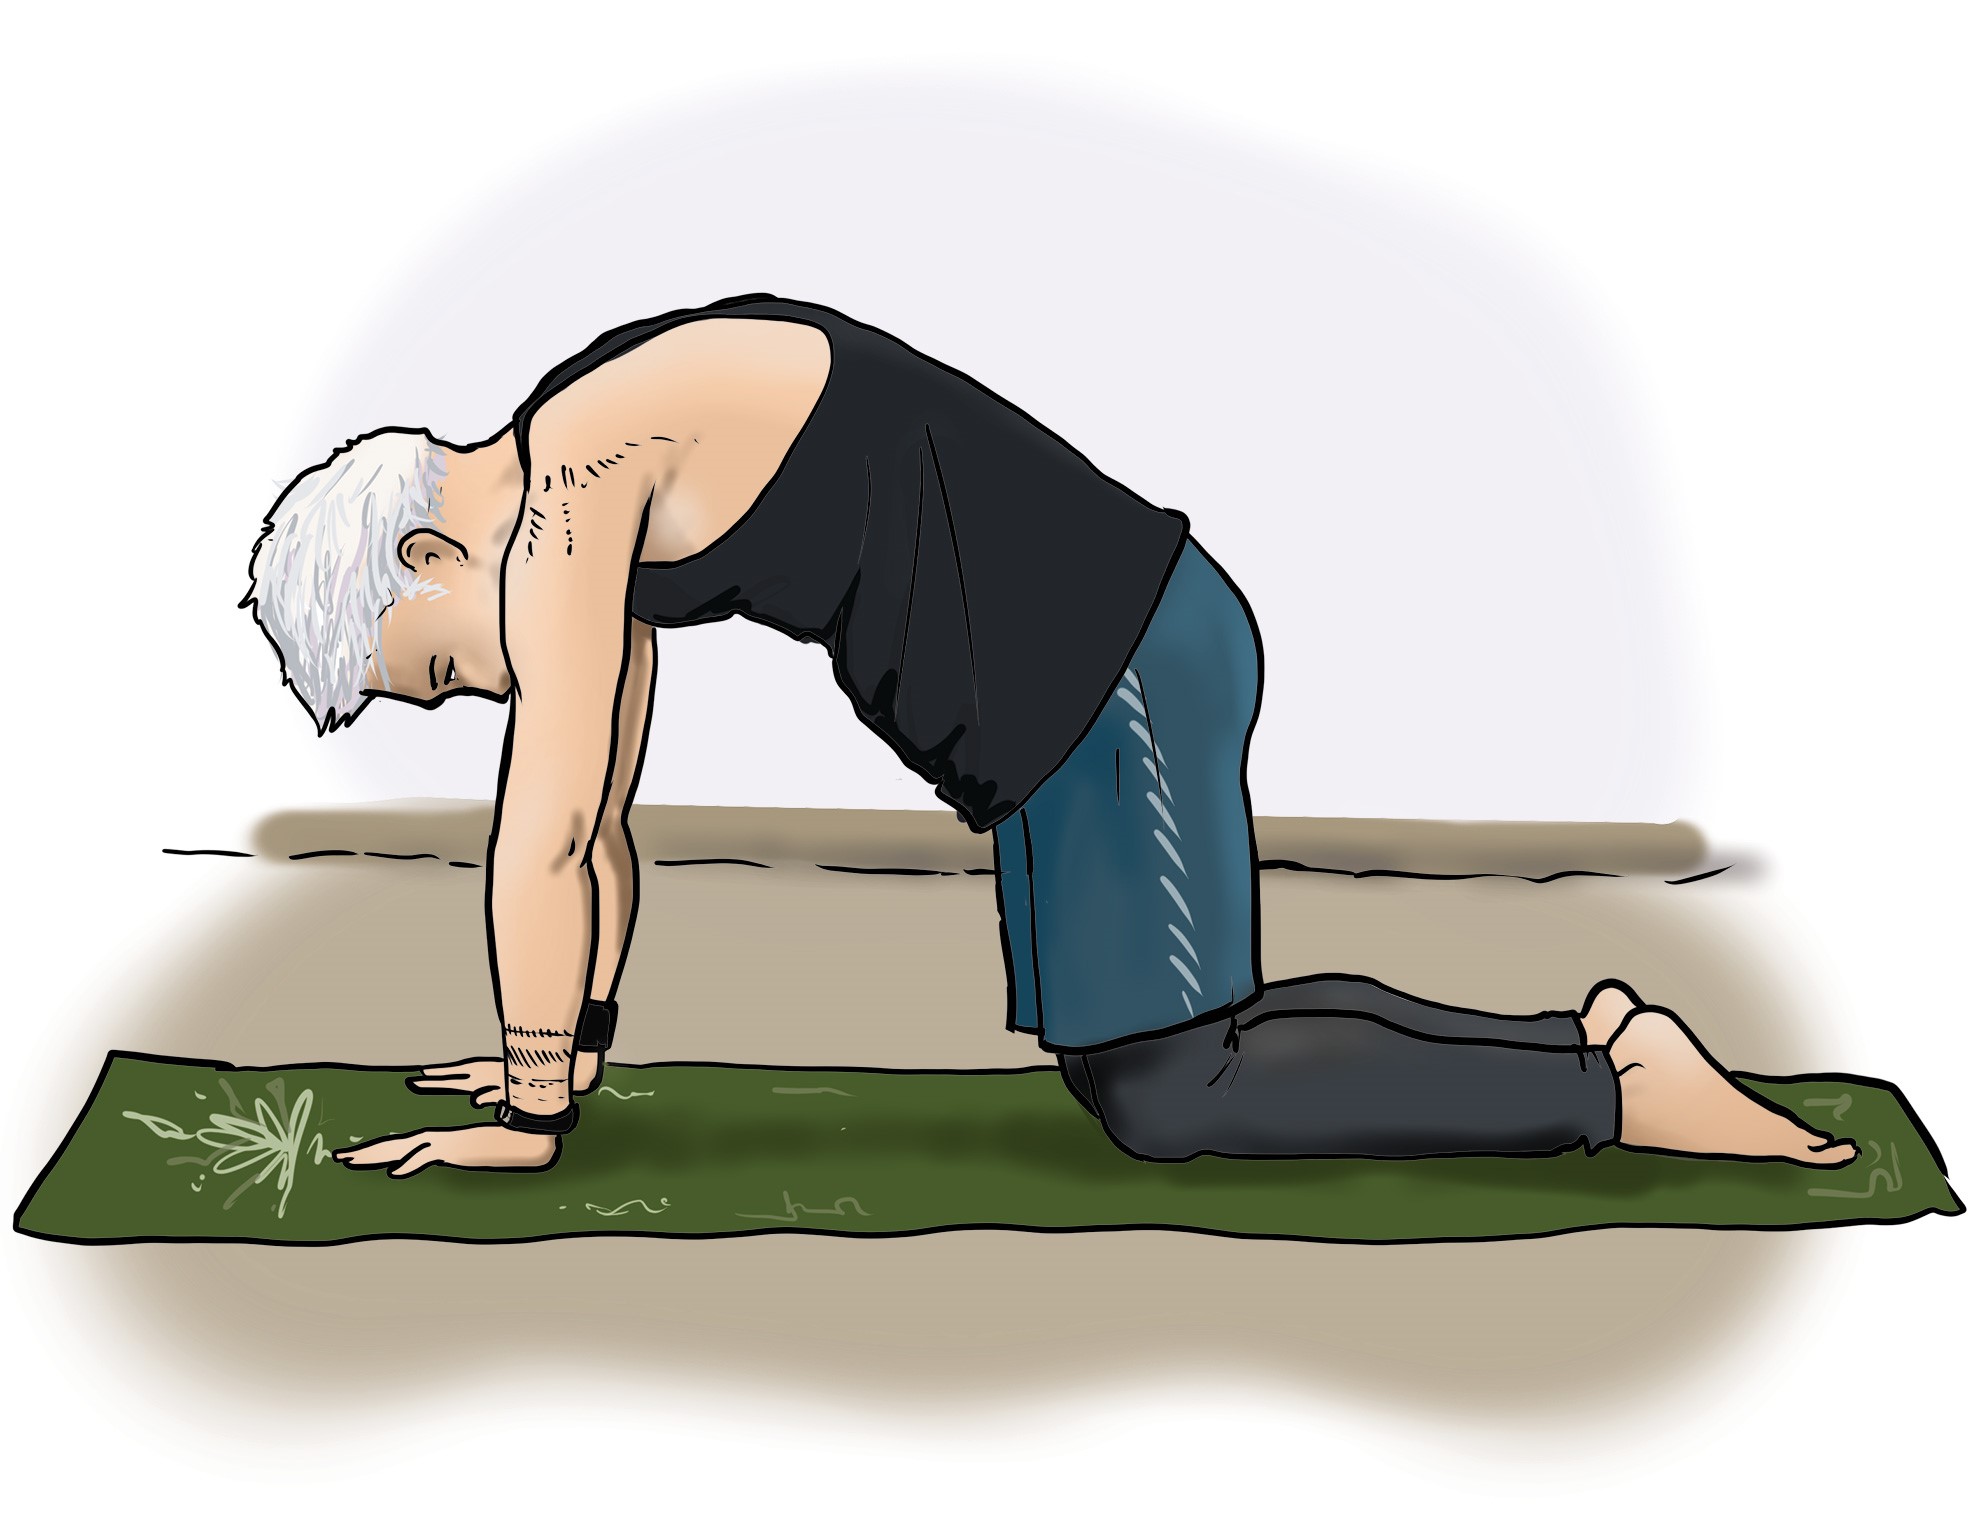 Ein Mann mit weißen Haaren macht eine Sportübung (auch als Katzenbuckel bezeichnet) auf einer Yogamatte